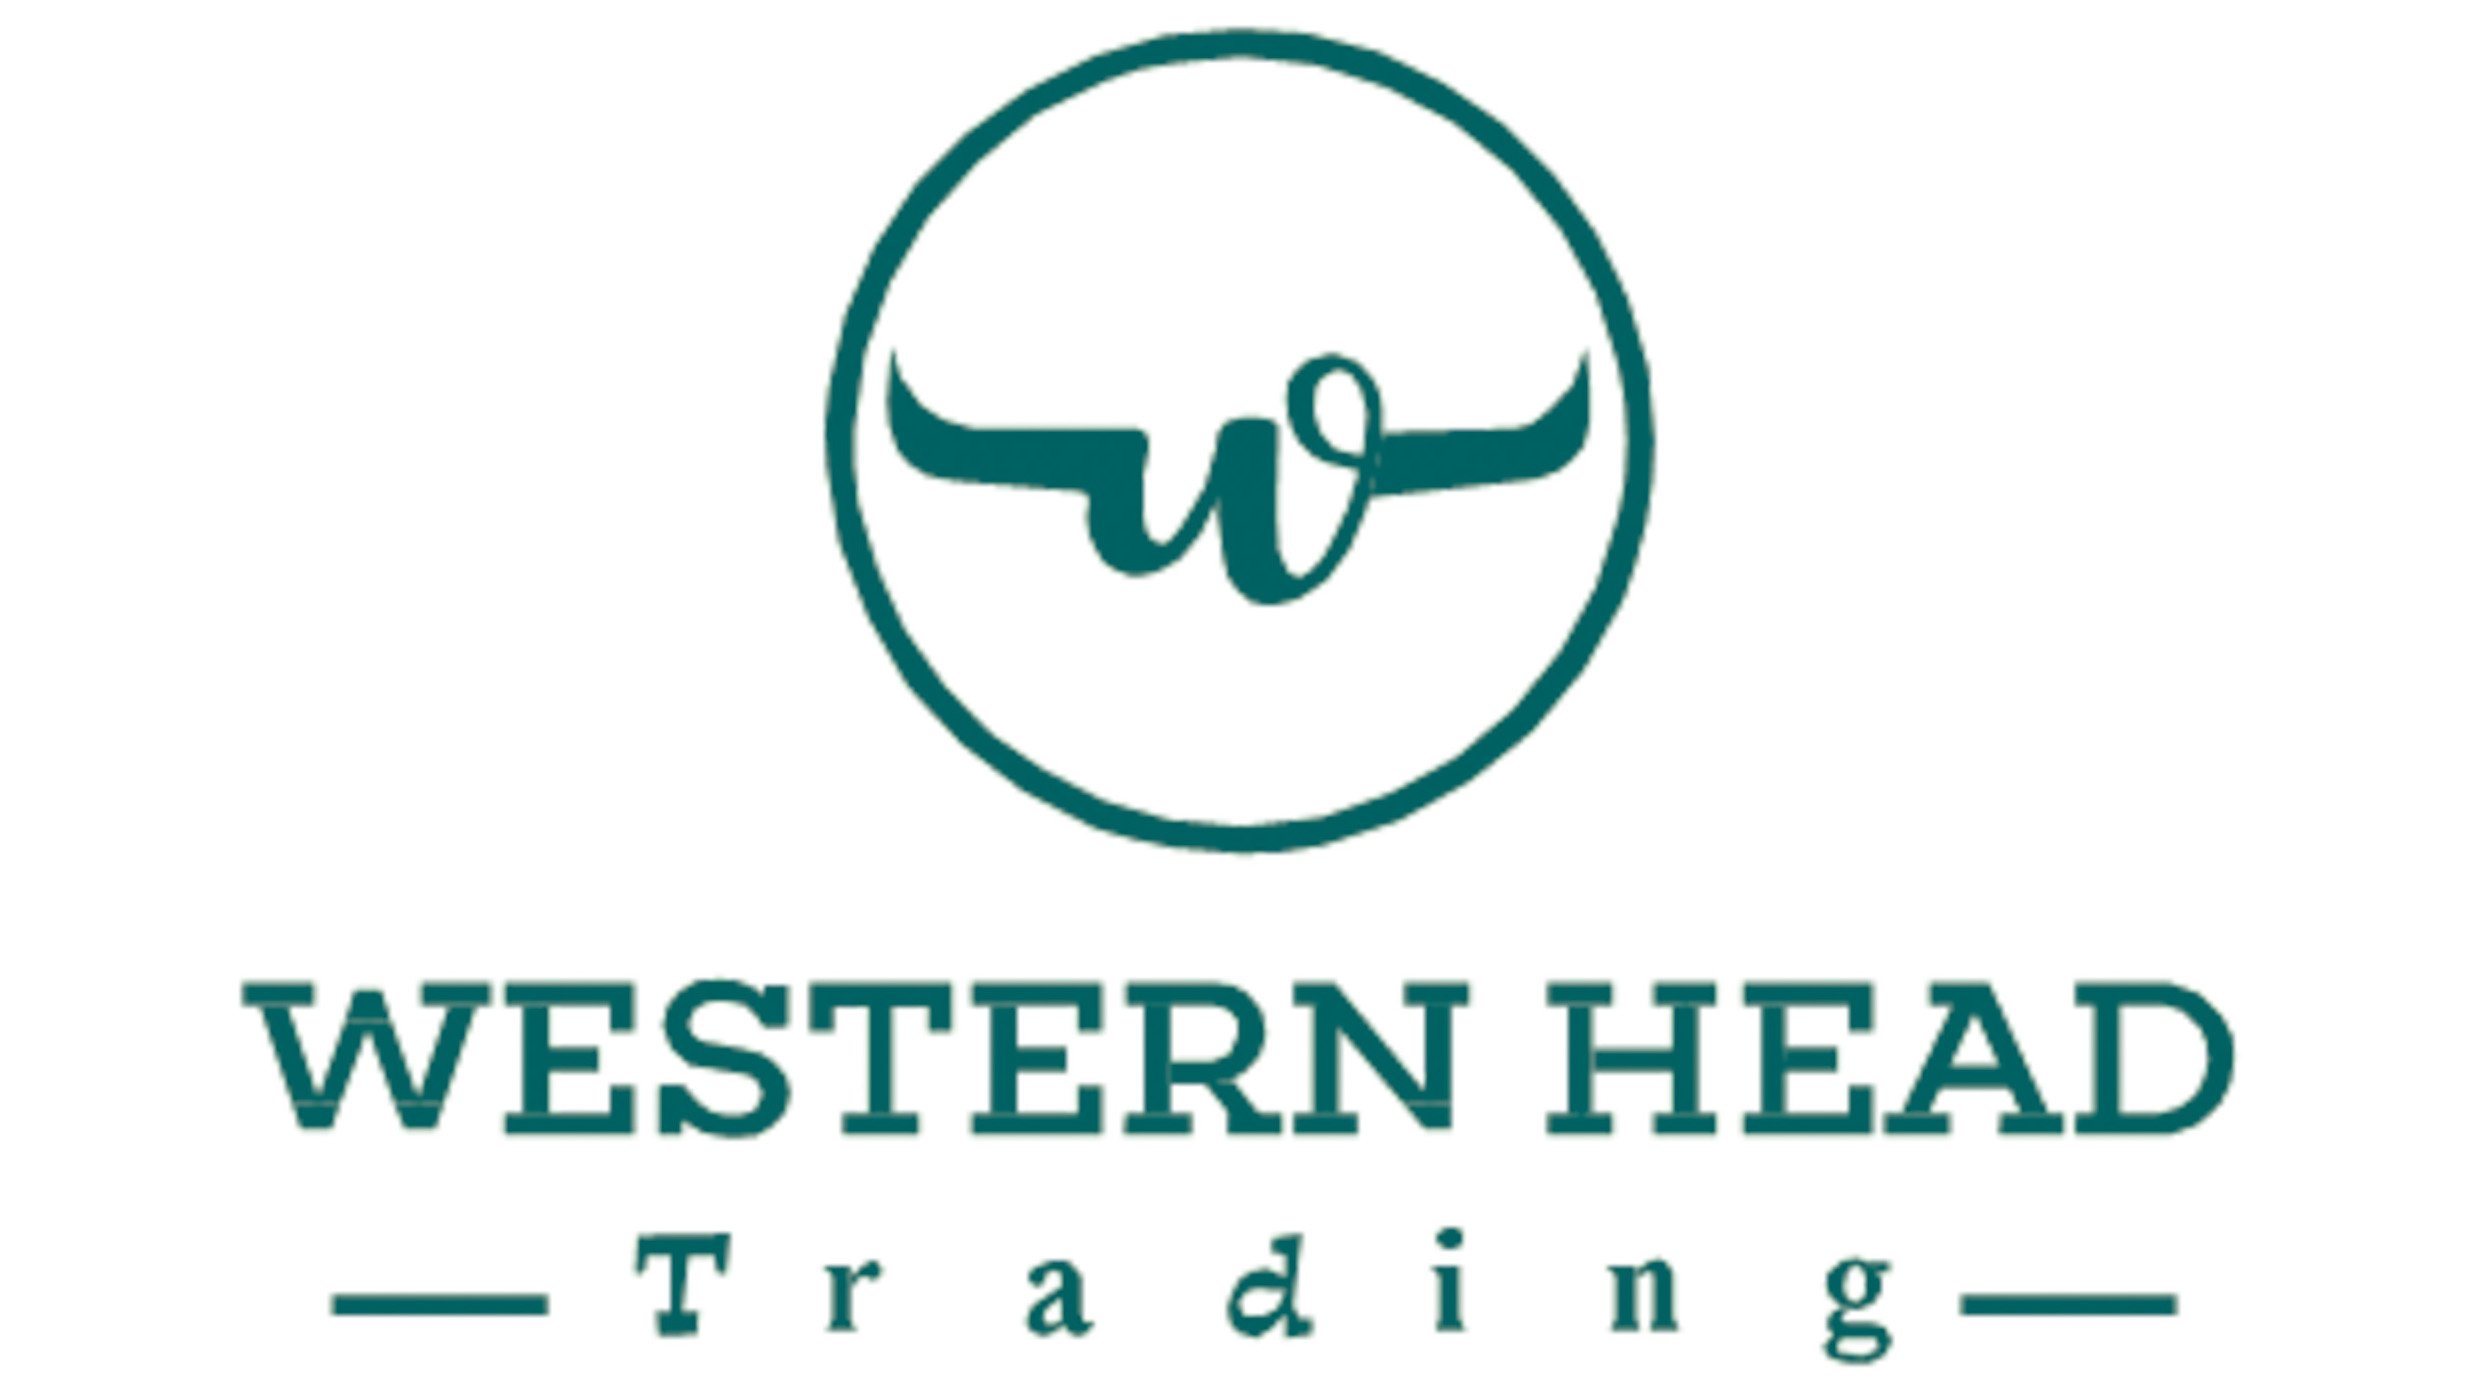 Westernhead Trading logo.jpg